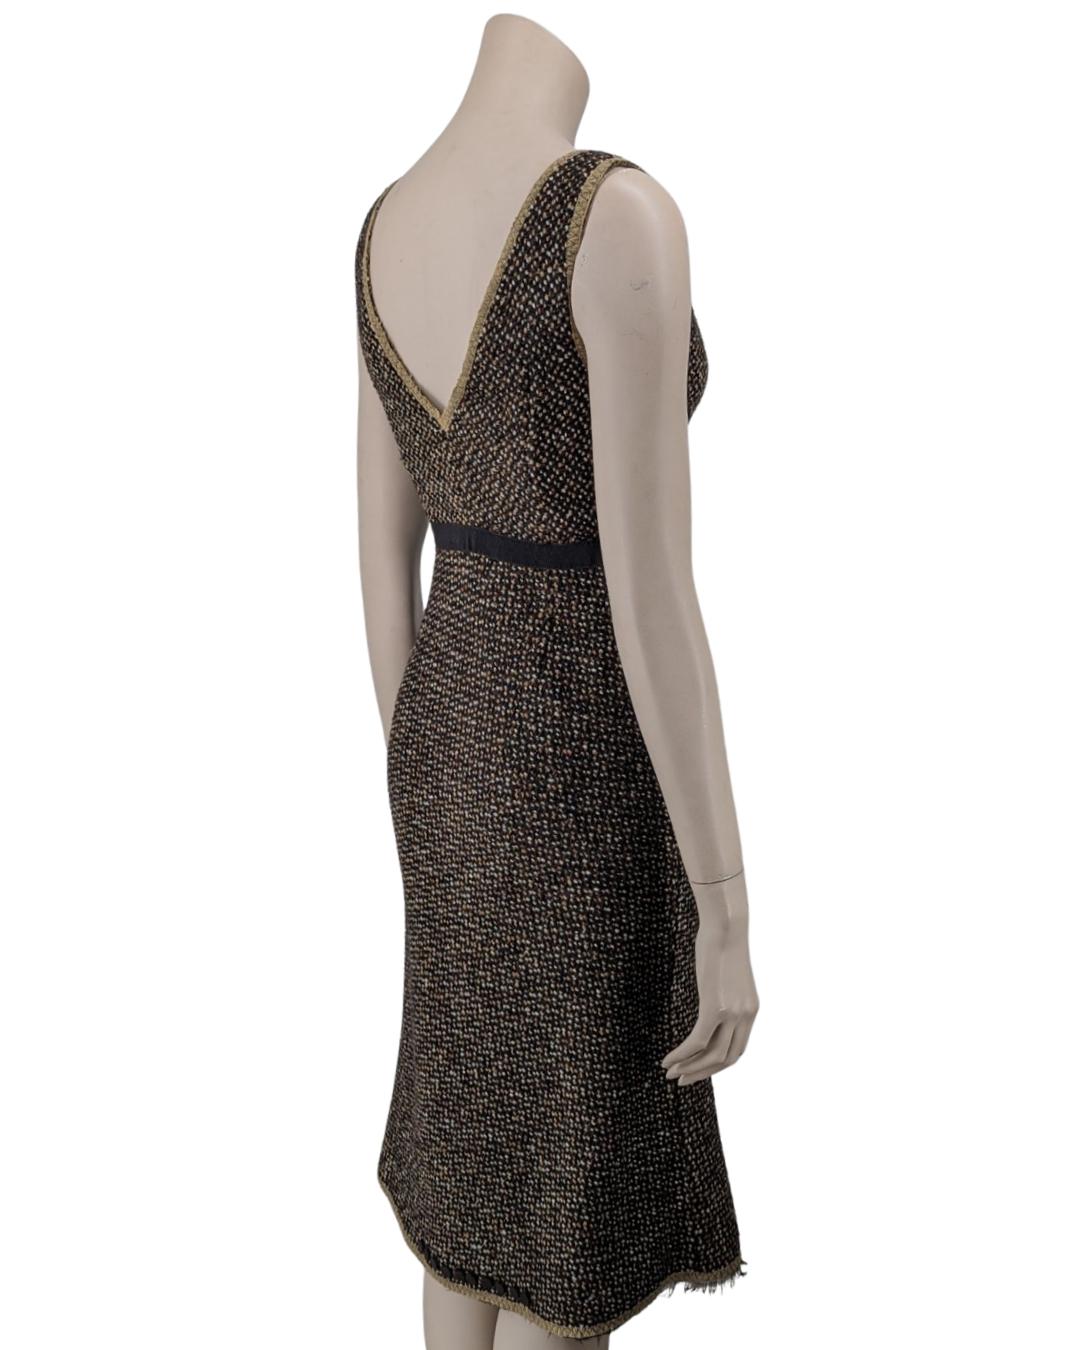 Prada Fall 2000 Runway Tweed Dress by Miuccia Prada For Sale 1